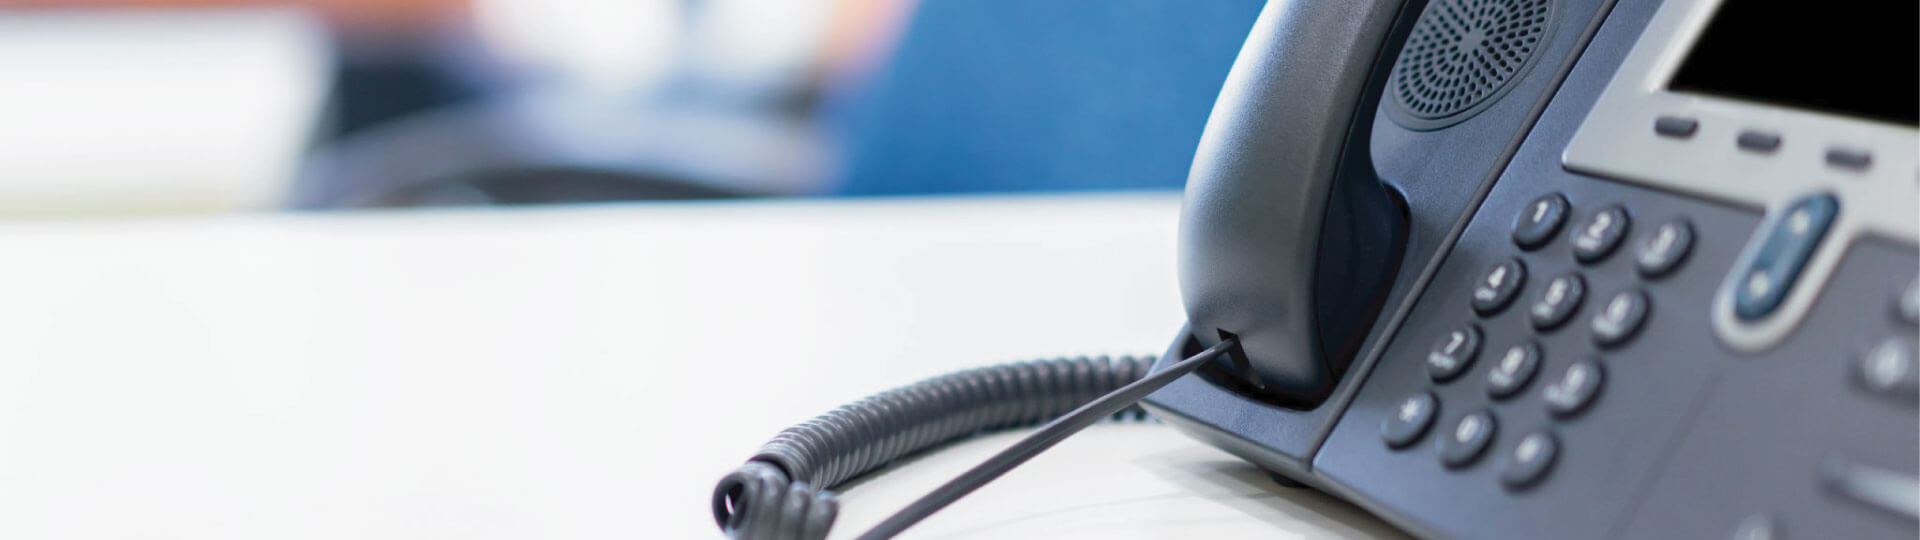 Usługi call center – jak podwyższyć ich jakość w 2019 roku?